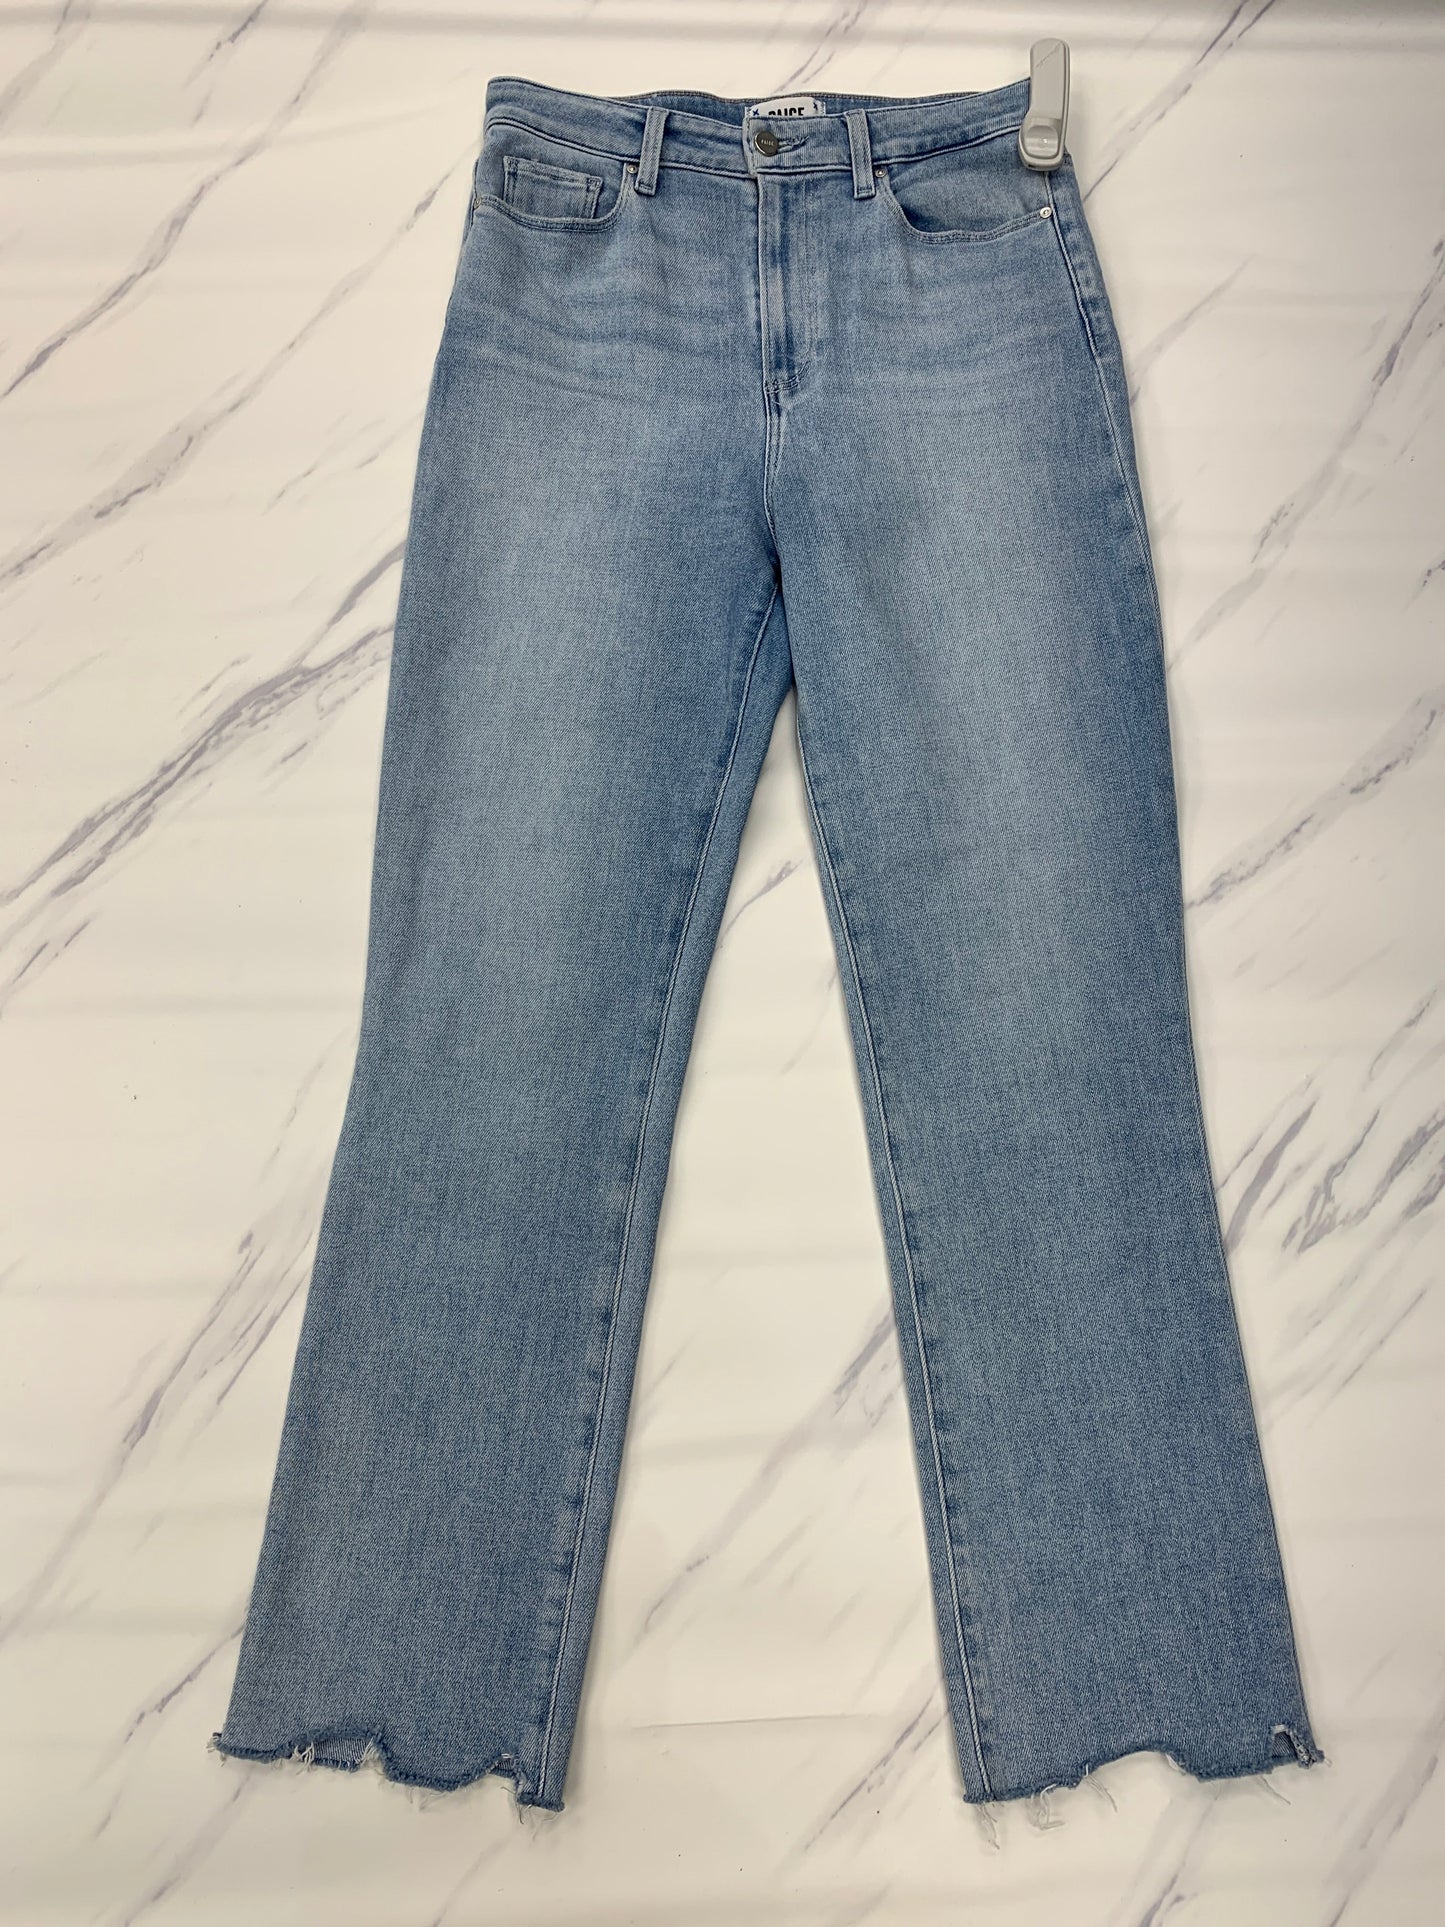 Jeans Designer Paige, Size 8